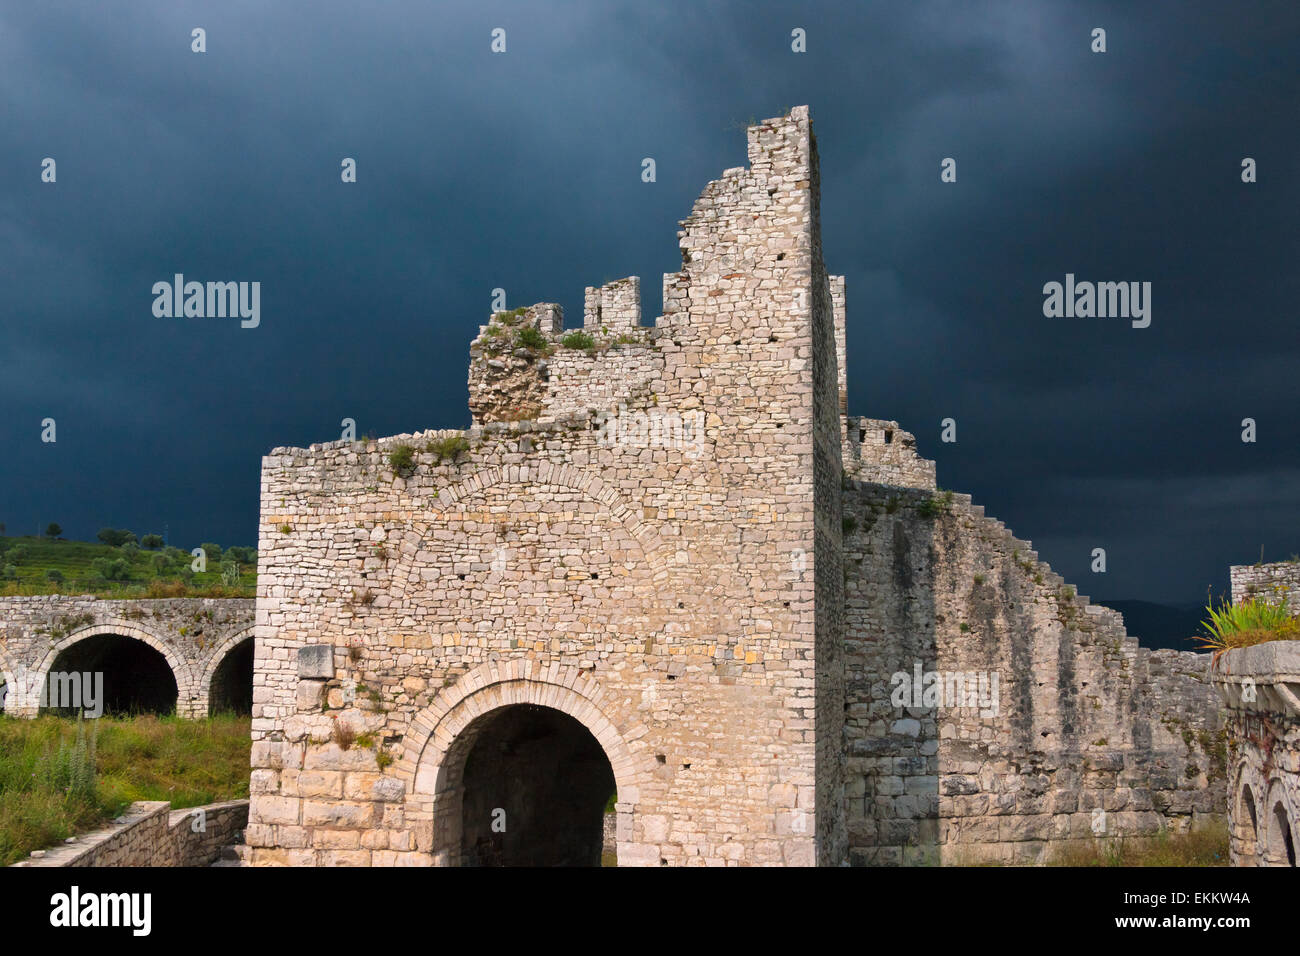 La citadelle et le château de Berat (site du patrimoine mondial de l'UNESCO), de l'Albanie Banque D'Images